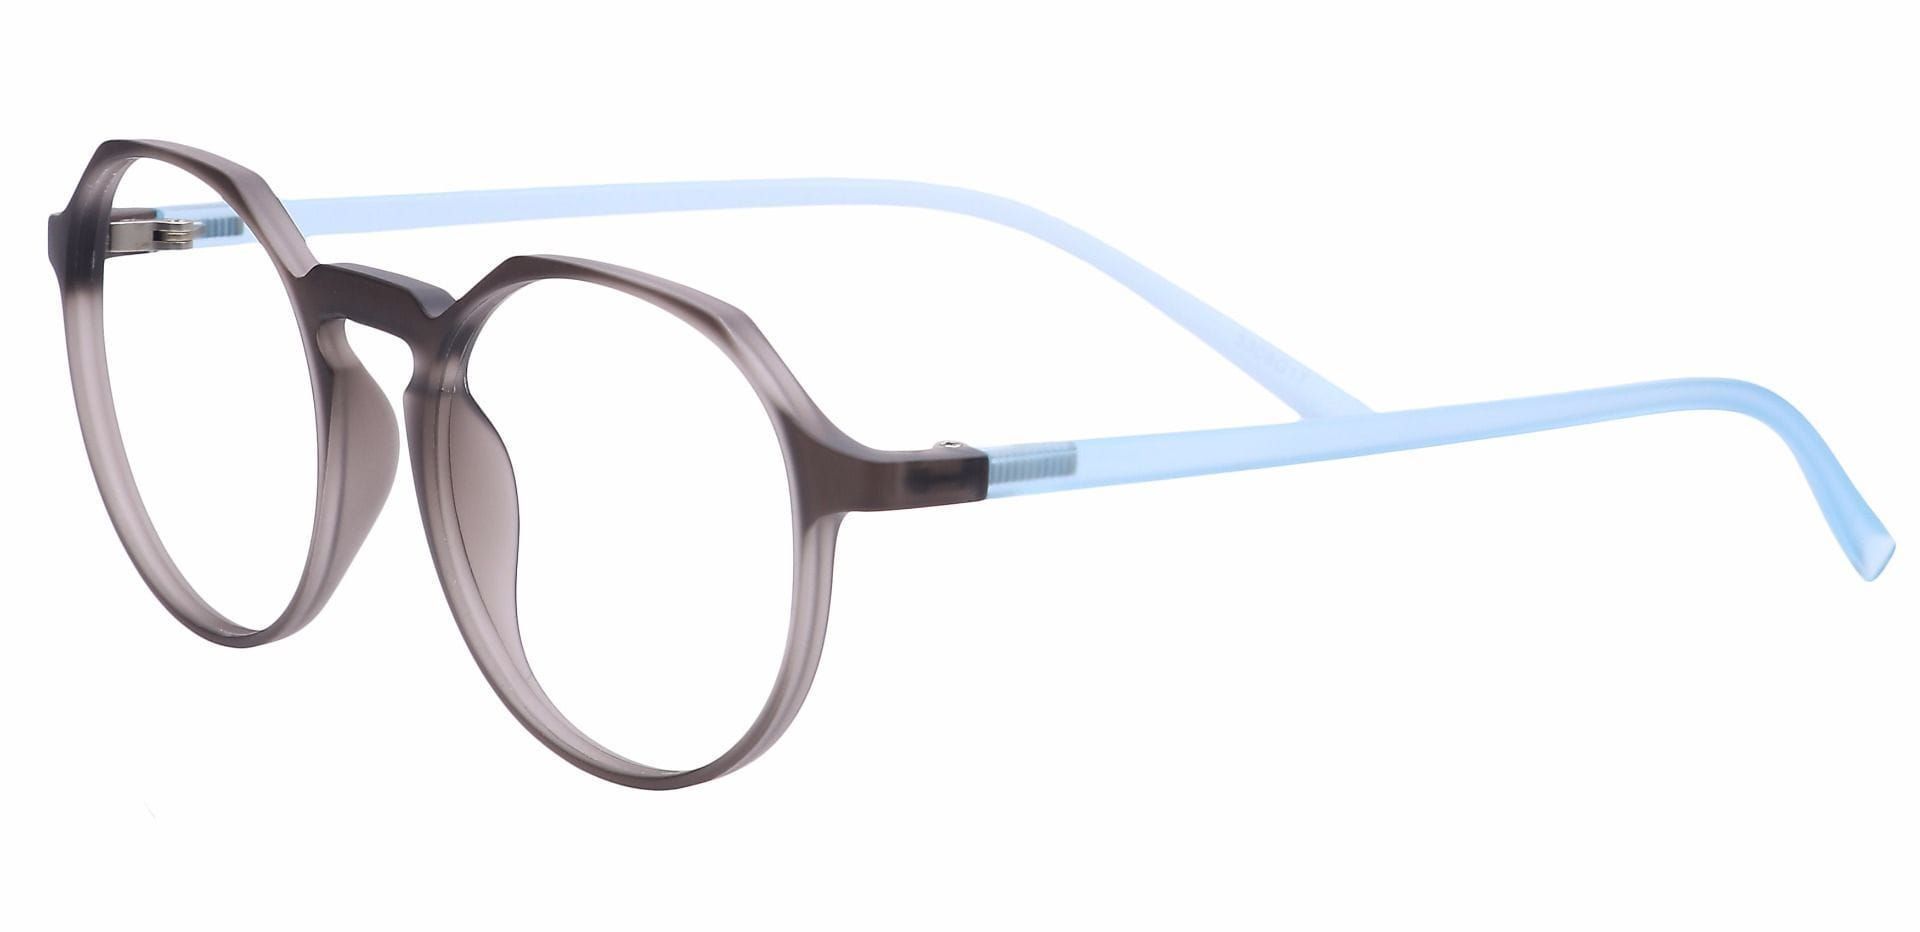 Dash Oval Prescription Glasses - Gray